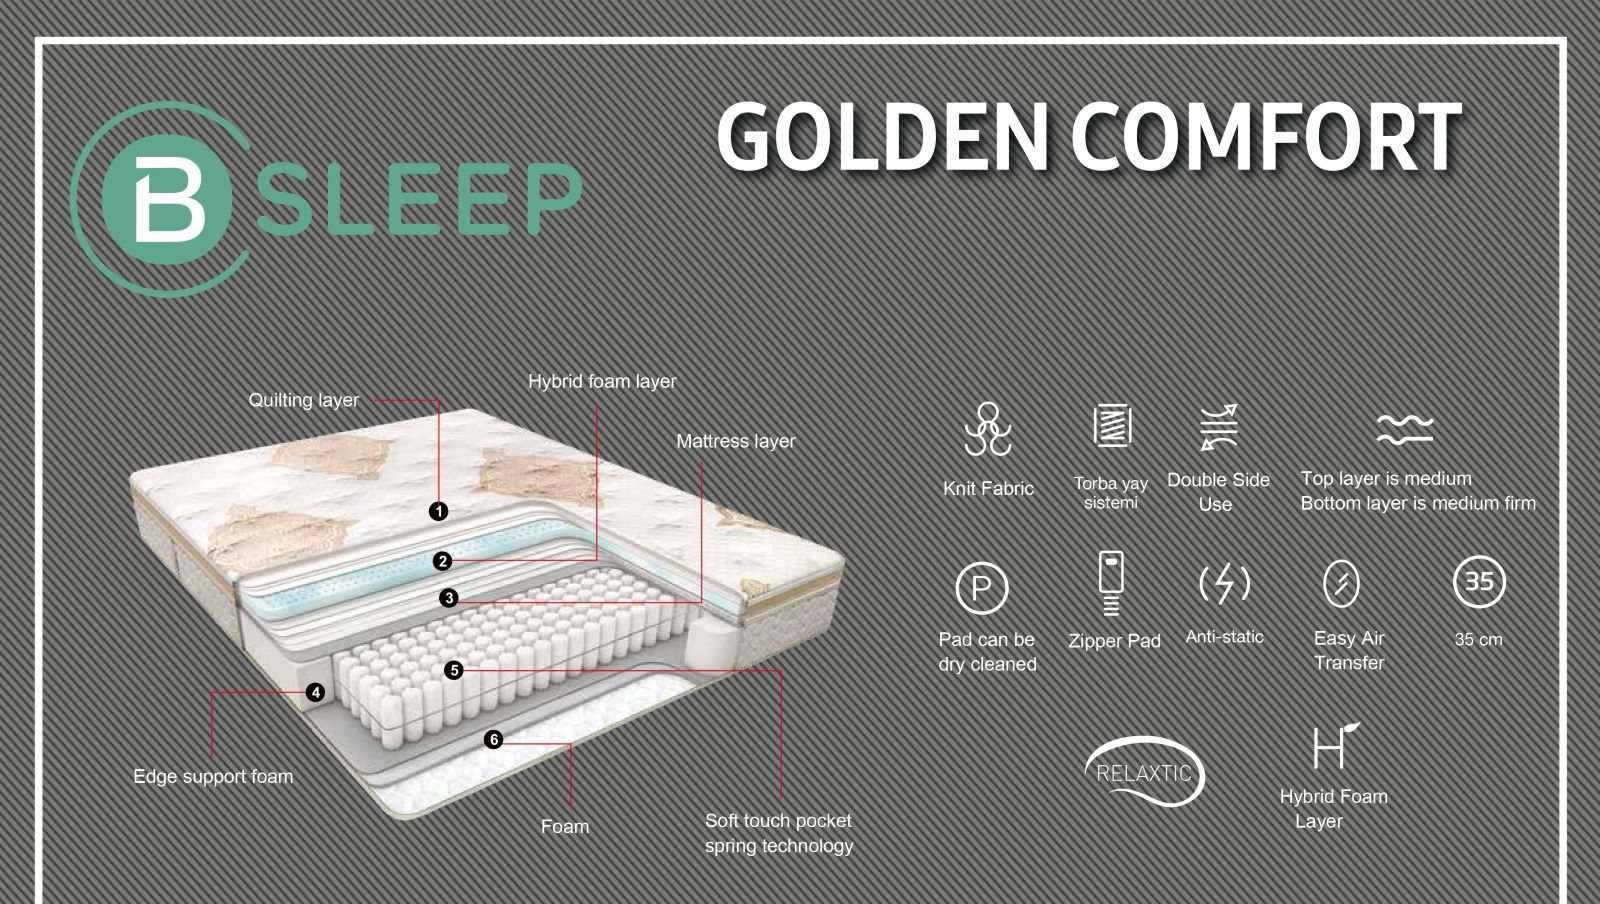 Golden comfort